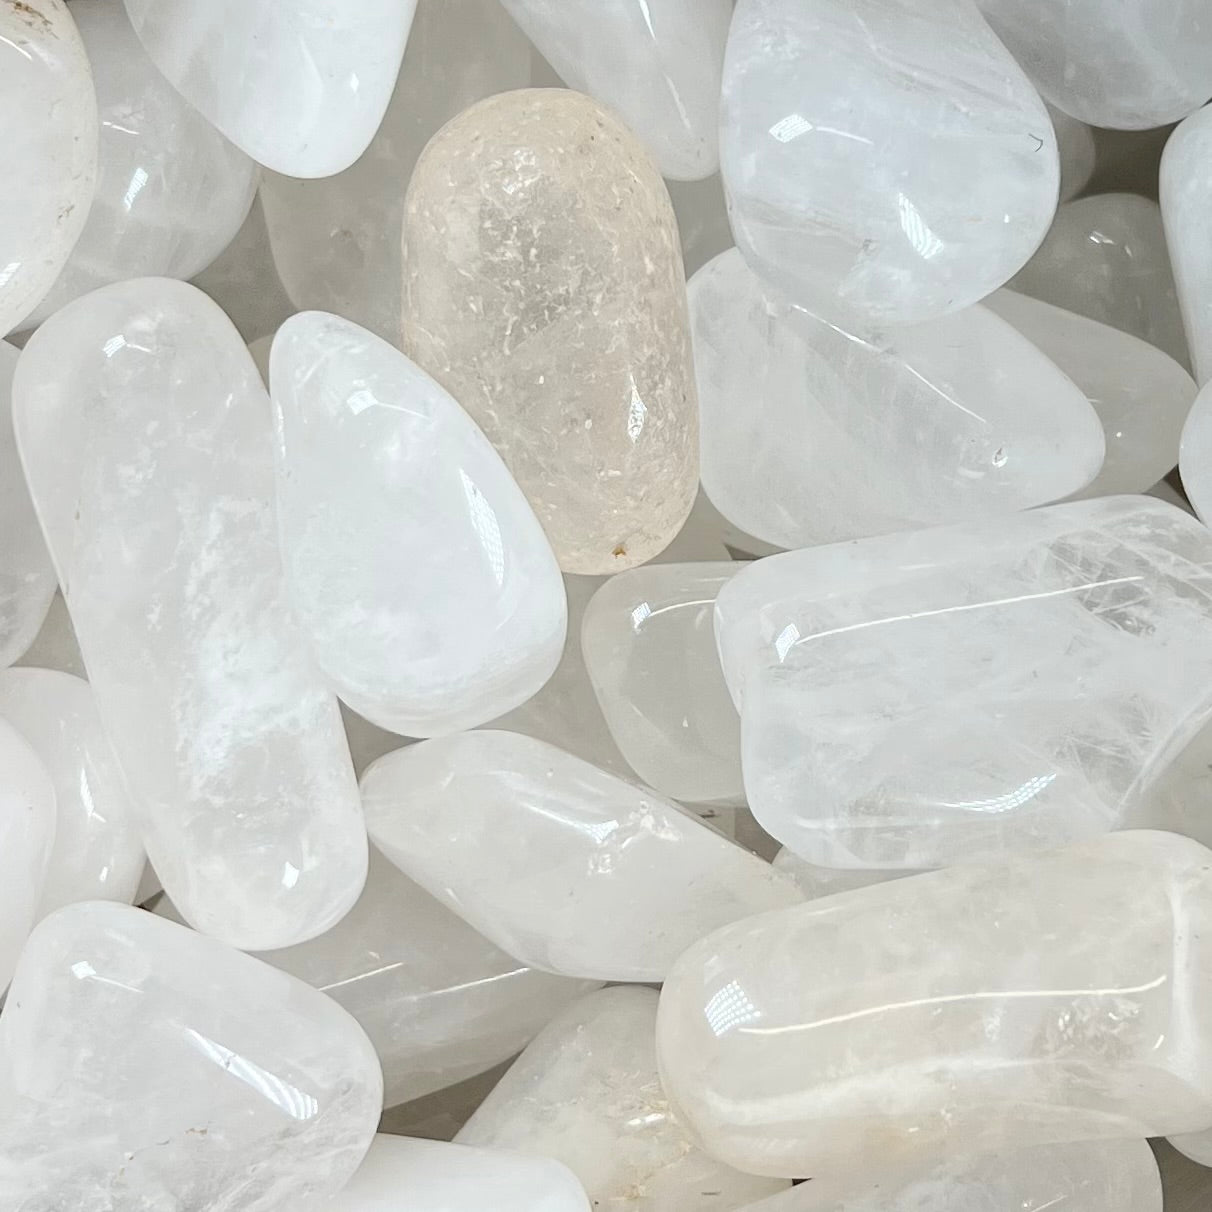 Palm sized tumbled white quartz stones.